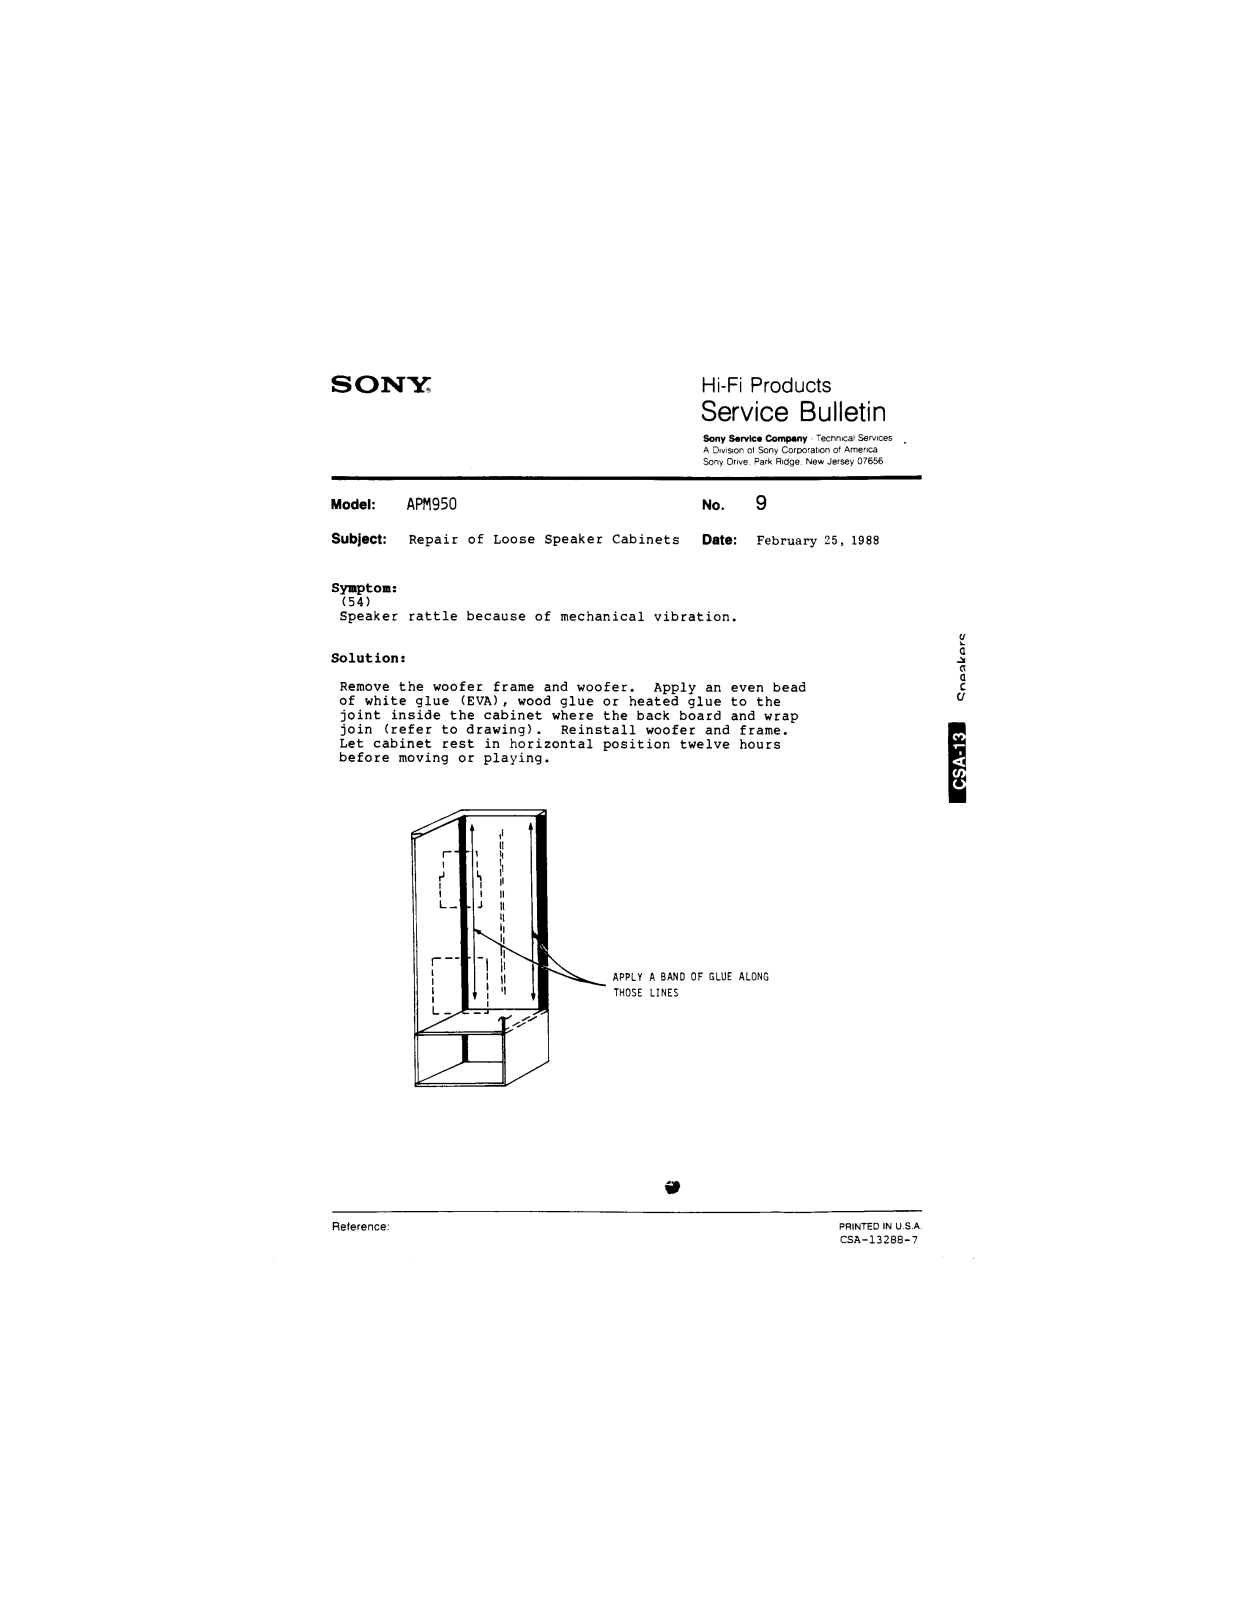 SONY CDX3183 Service Manual